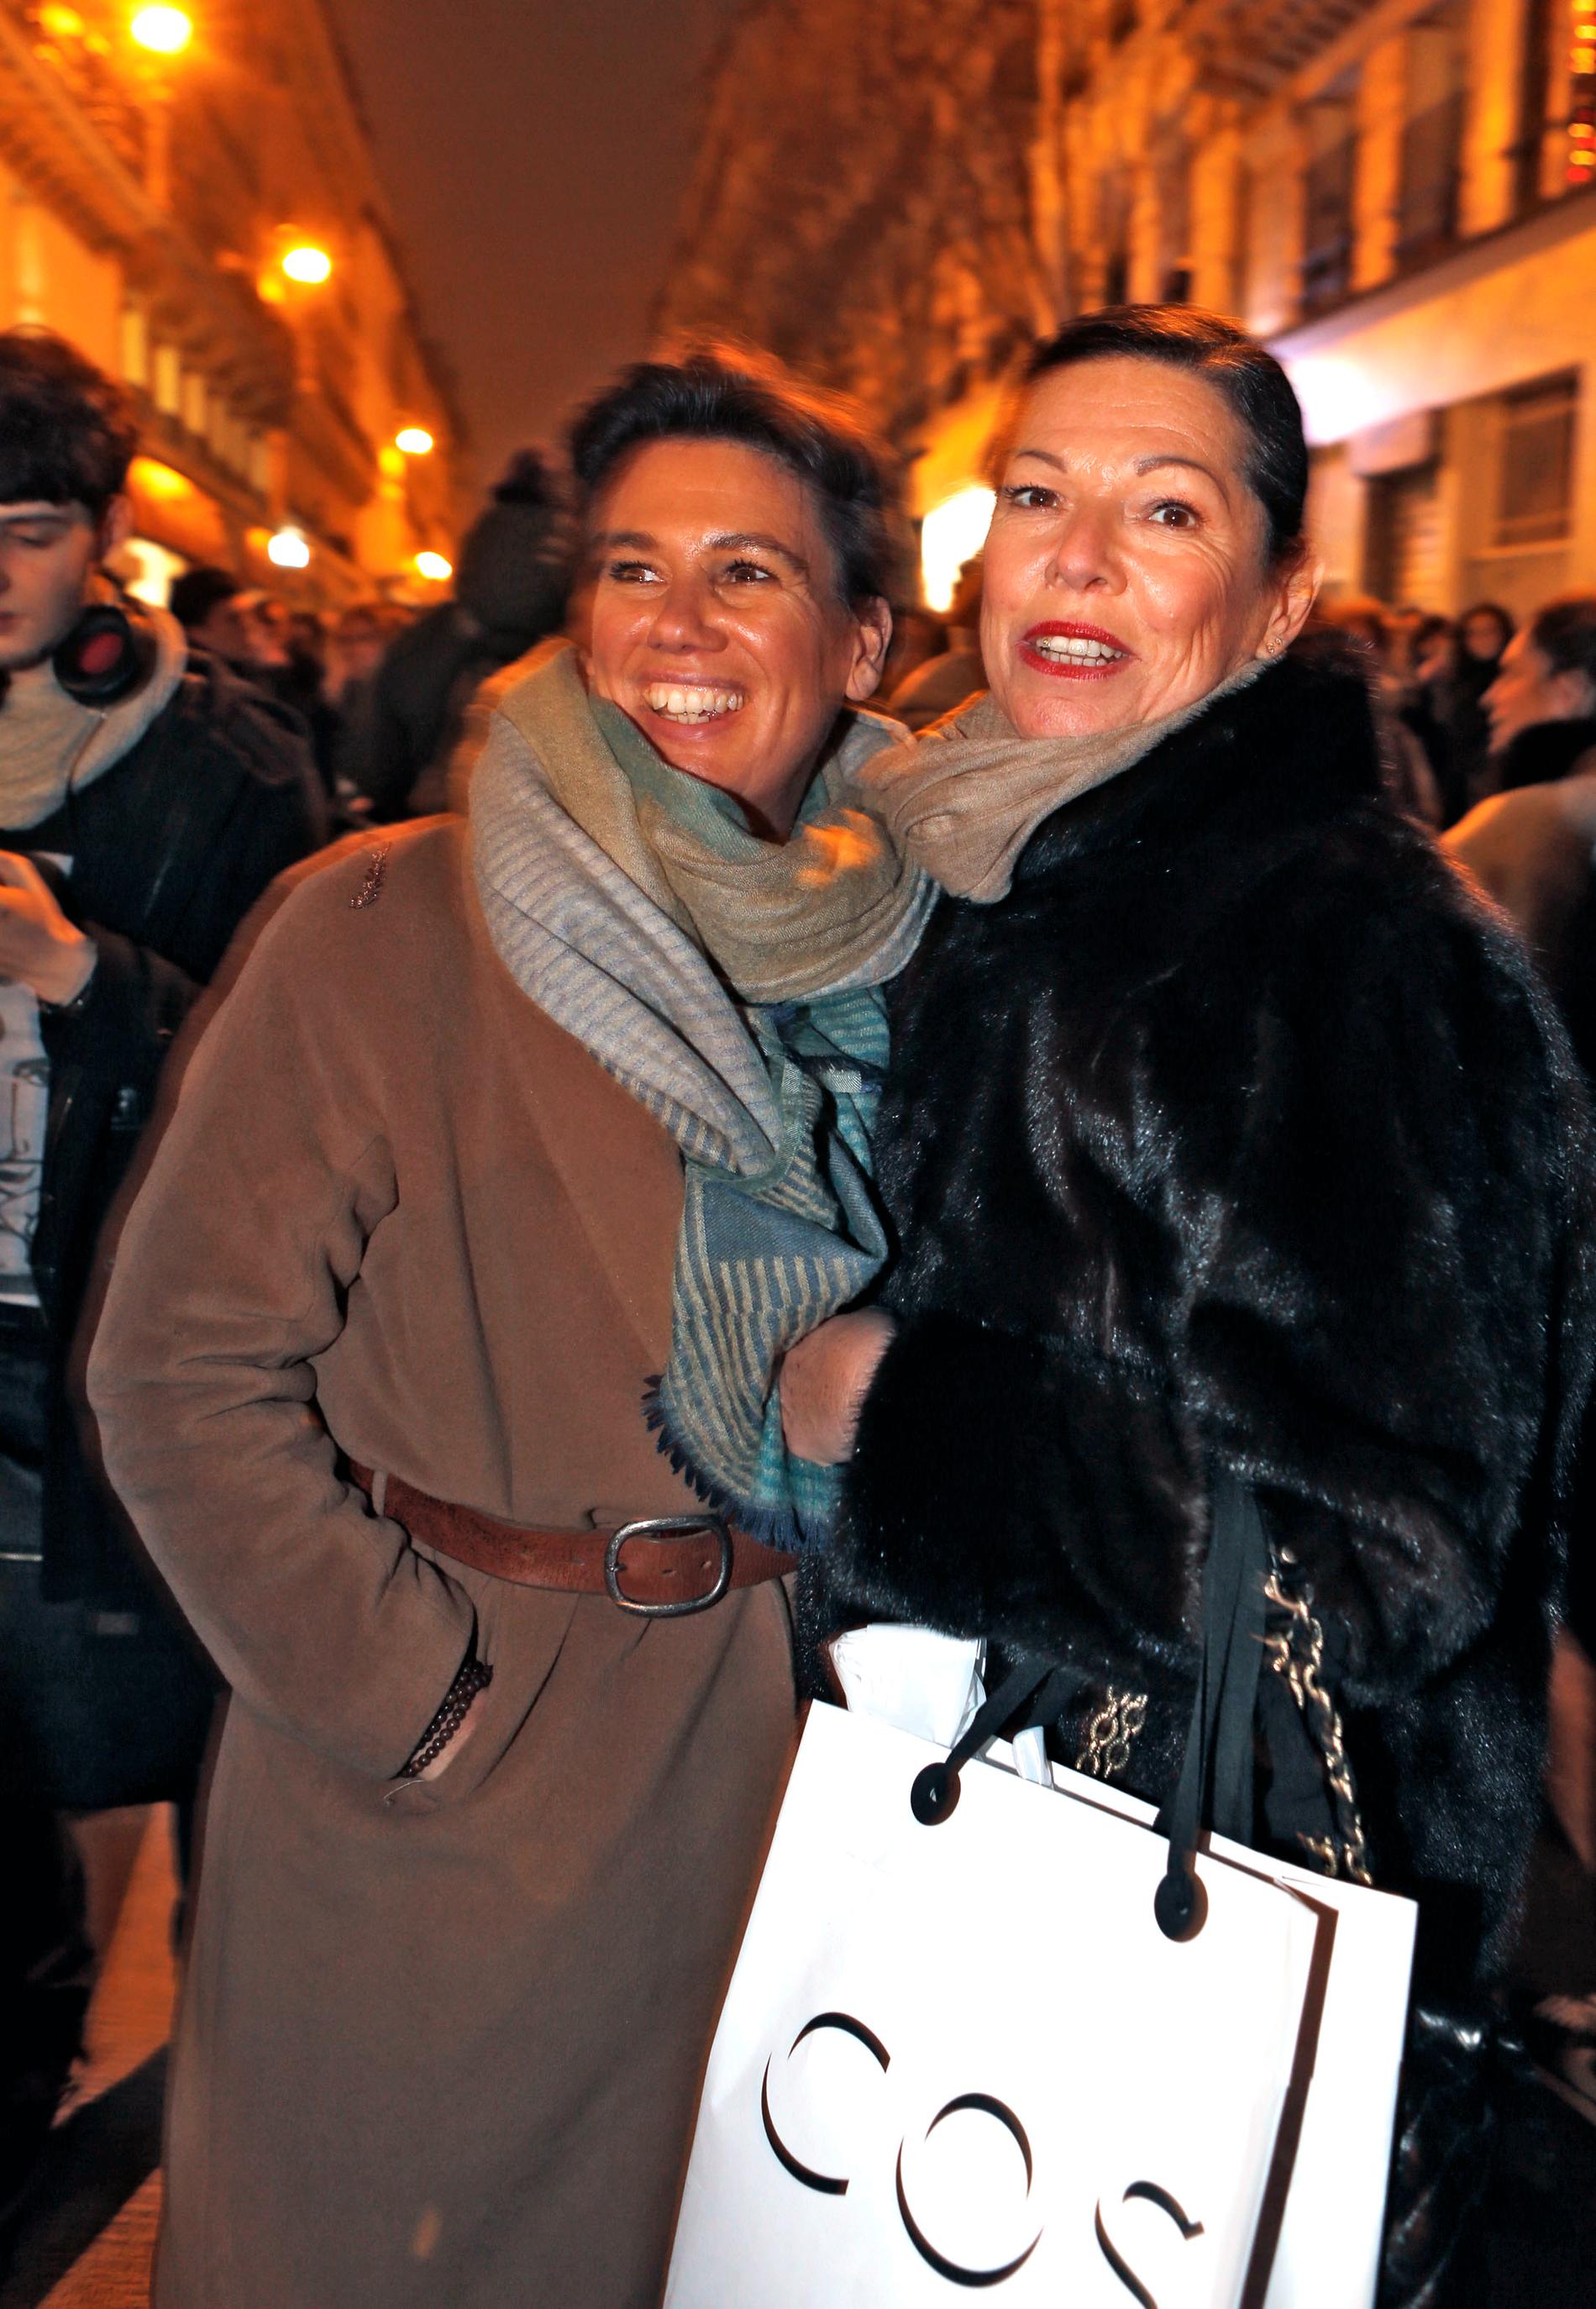 Väninnorna Annik och Corinne var ute i päls och shoppingbag för att stödja Charli Hebdo.